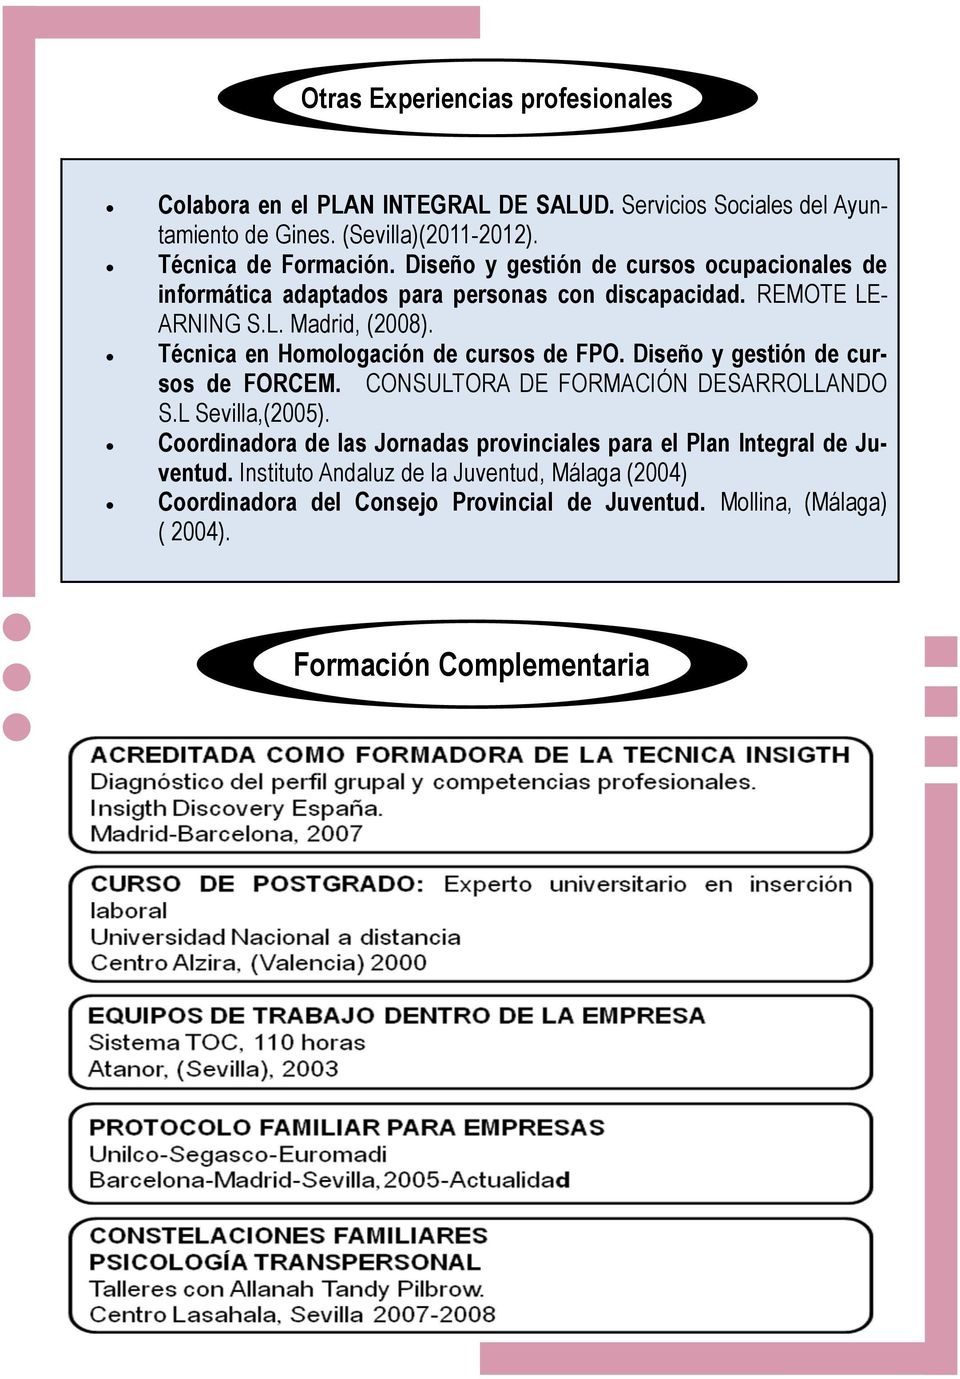 Técnica en Homologación de cursos de FPO. Diseño y gestión de cursos de FORCEM. CONSULTORA DE FORMACIÓN DESARROLLANDO S.L Sevilla,(2005).